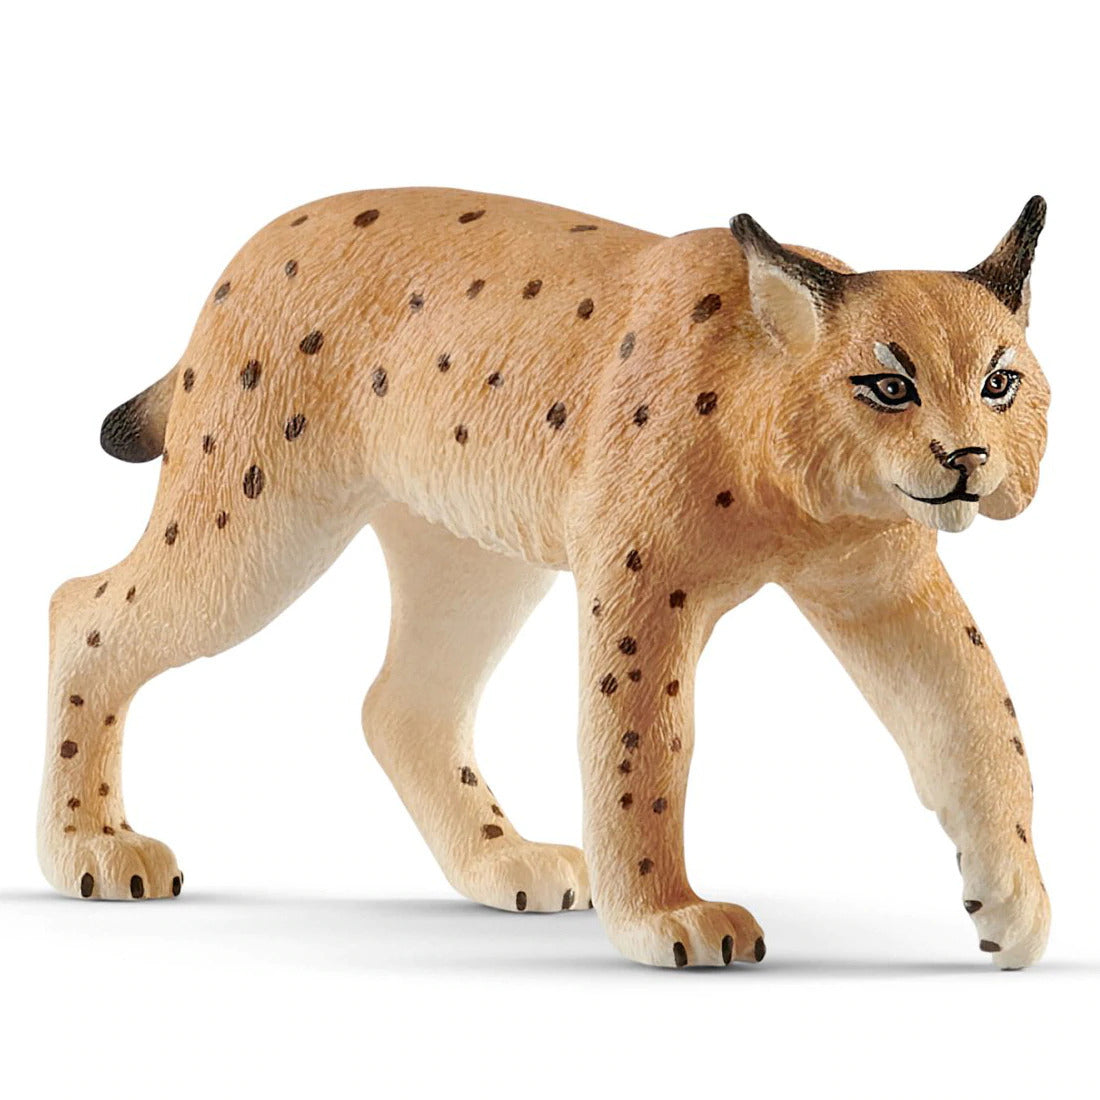 Schleich 14822 Lynx figurine